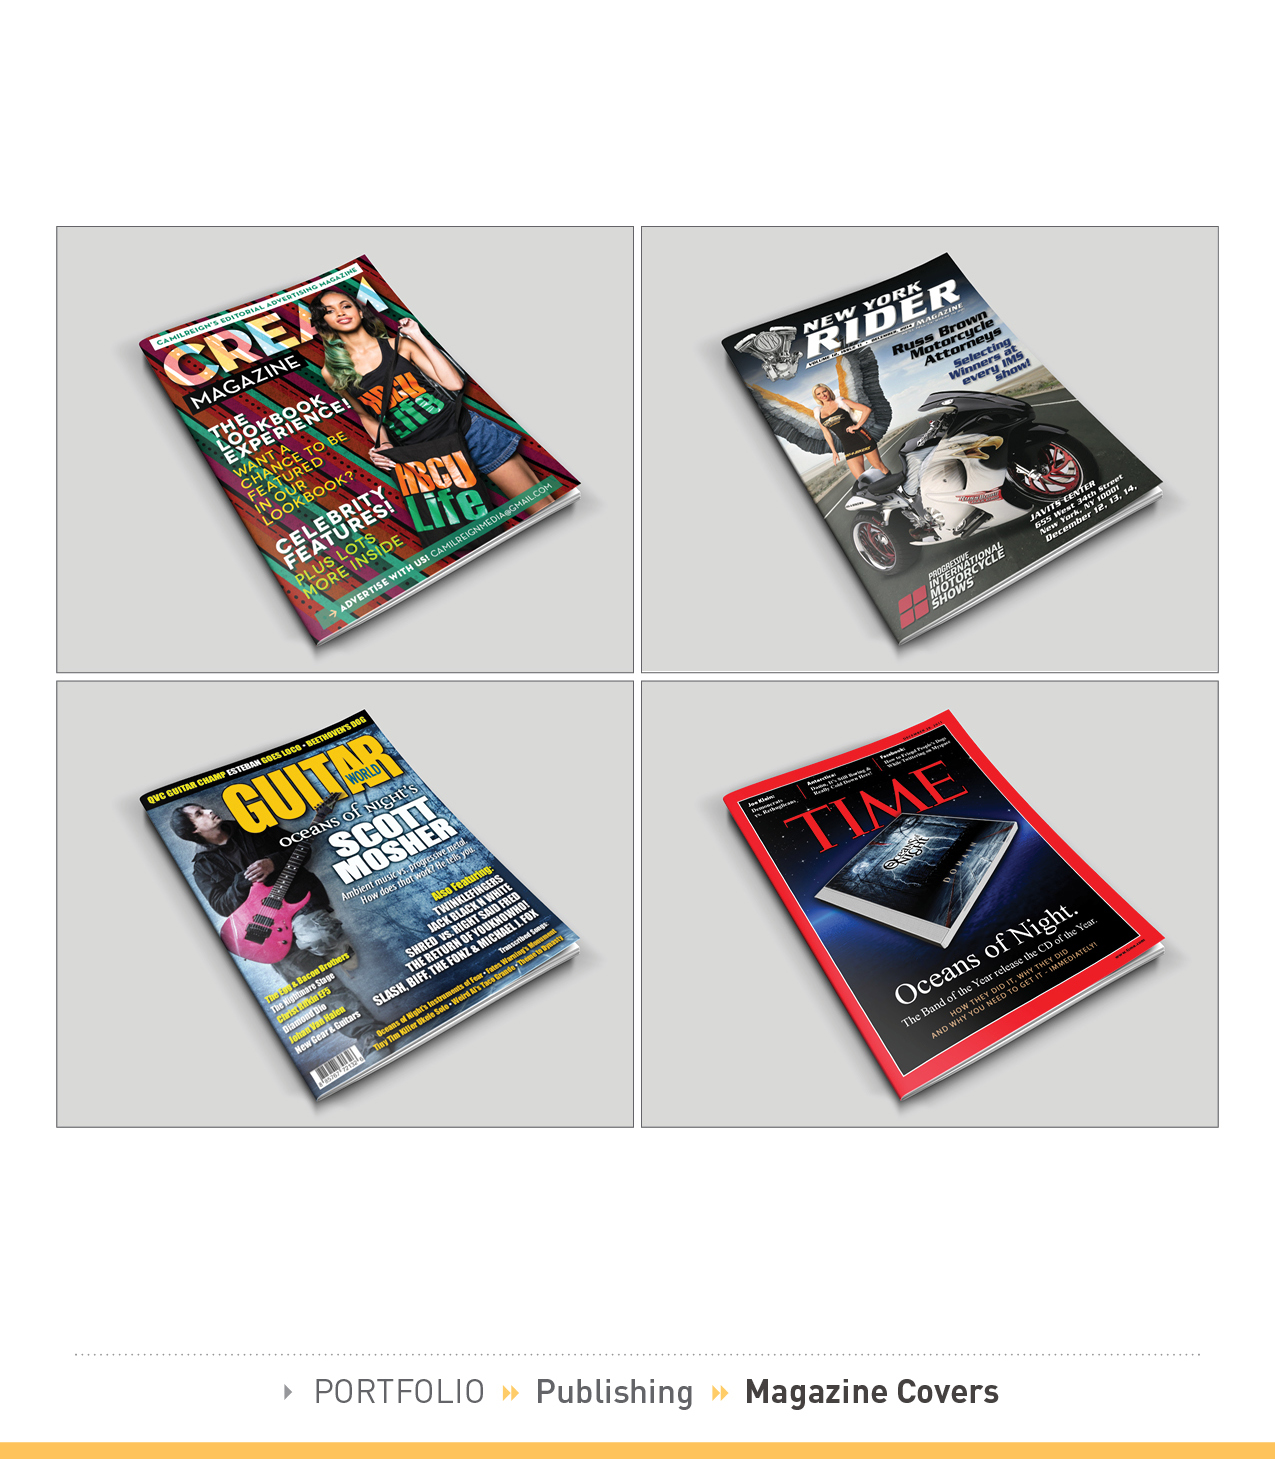 » PORTFOLIO » Publishing » Magazine Covers